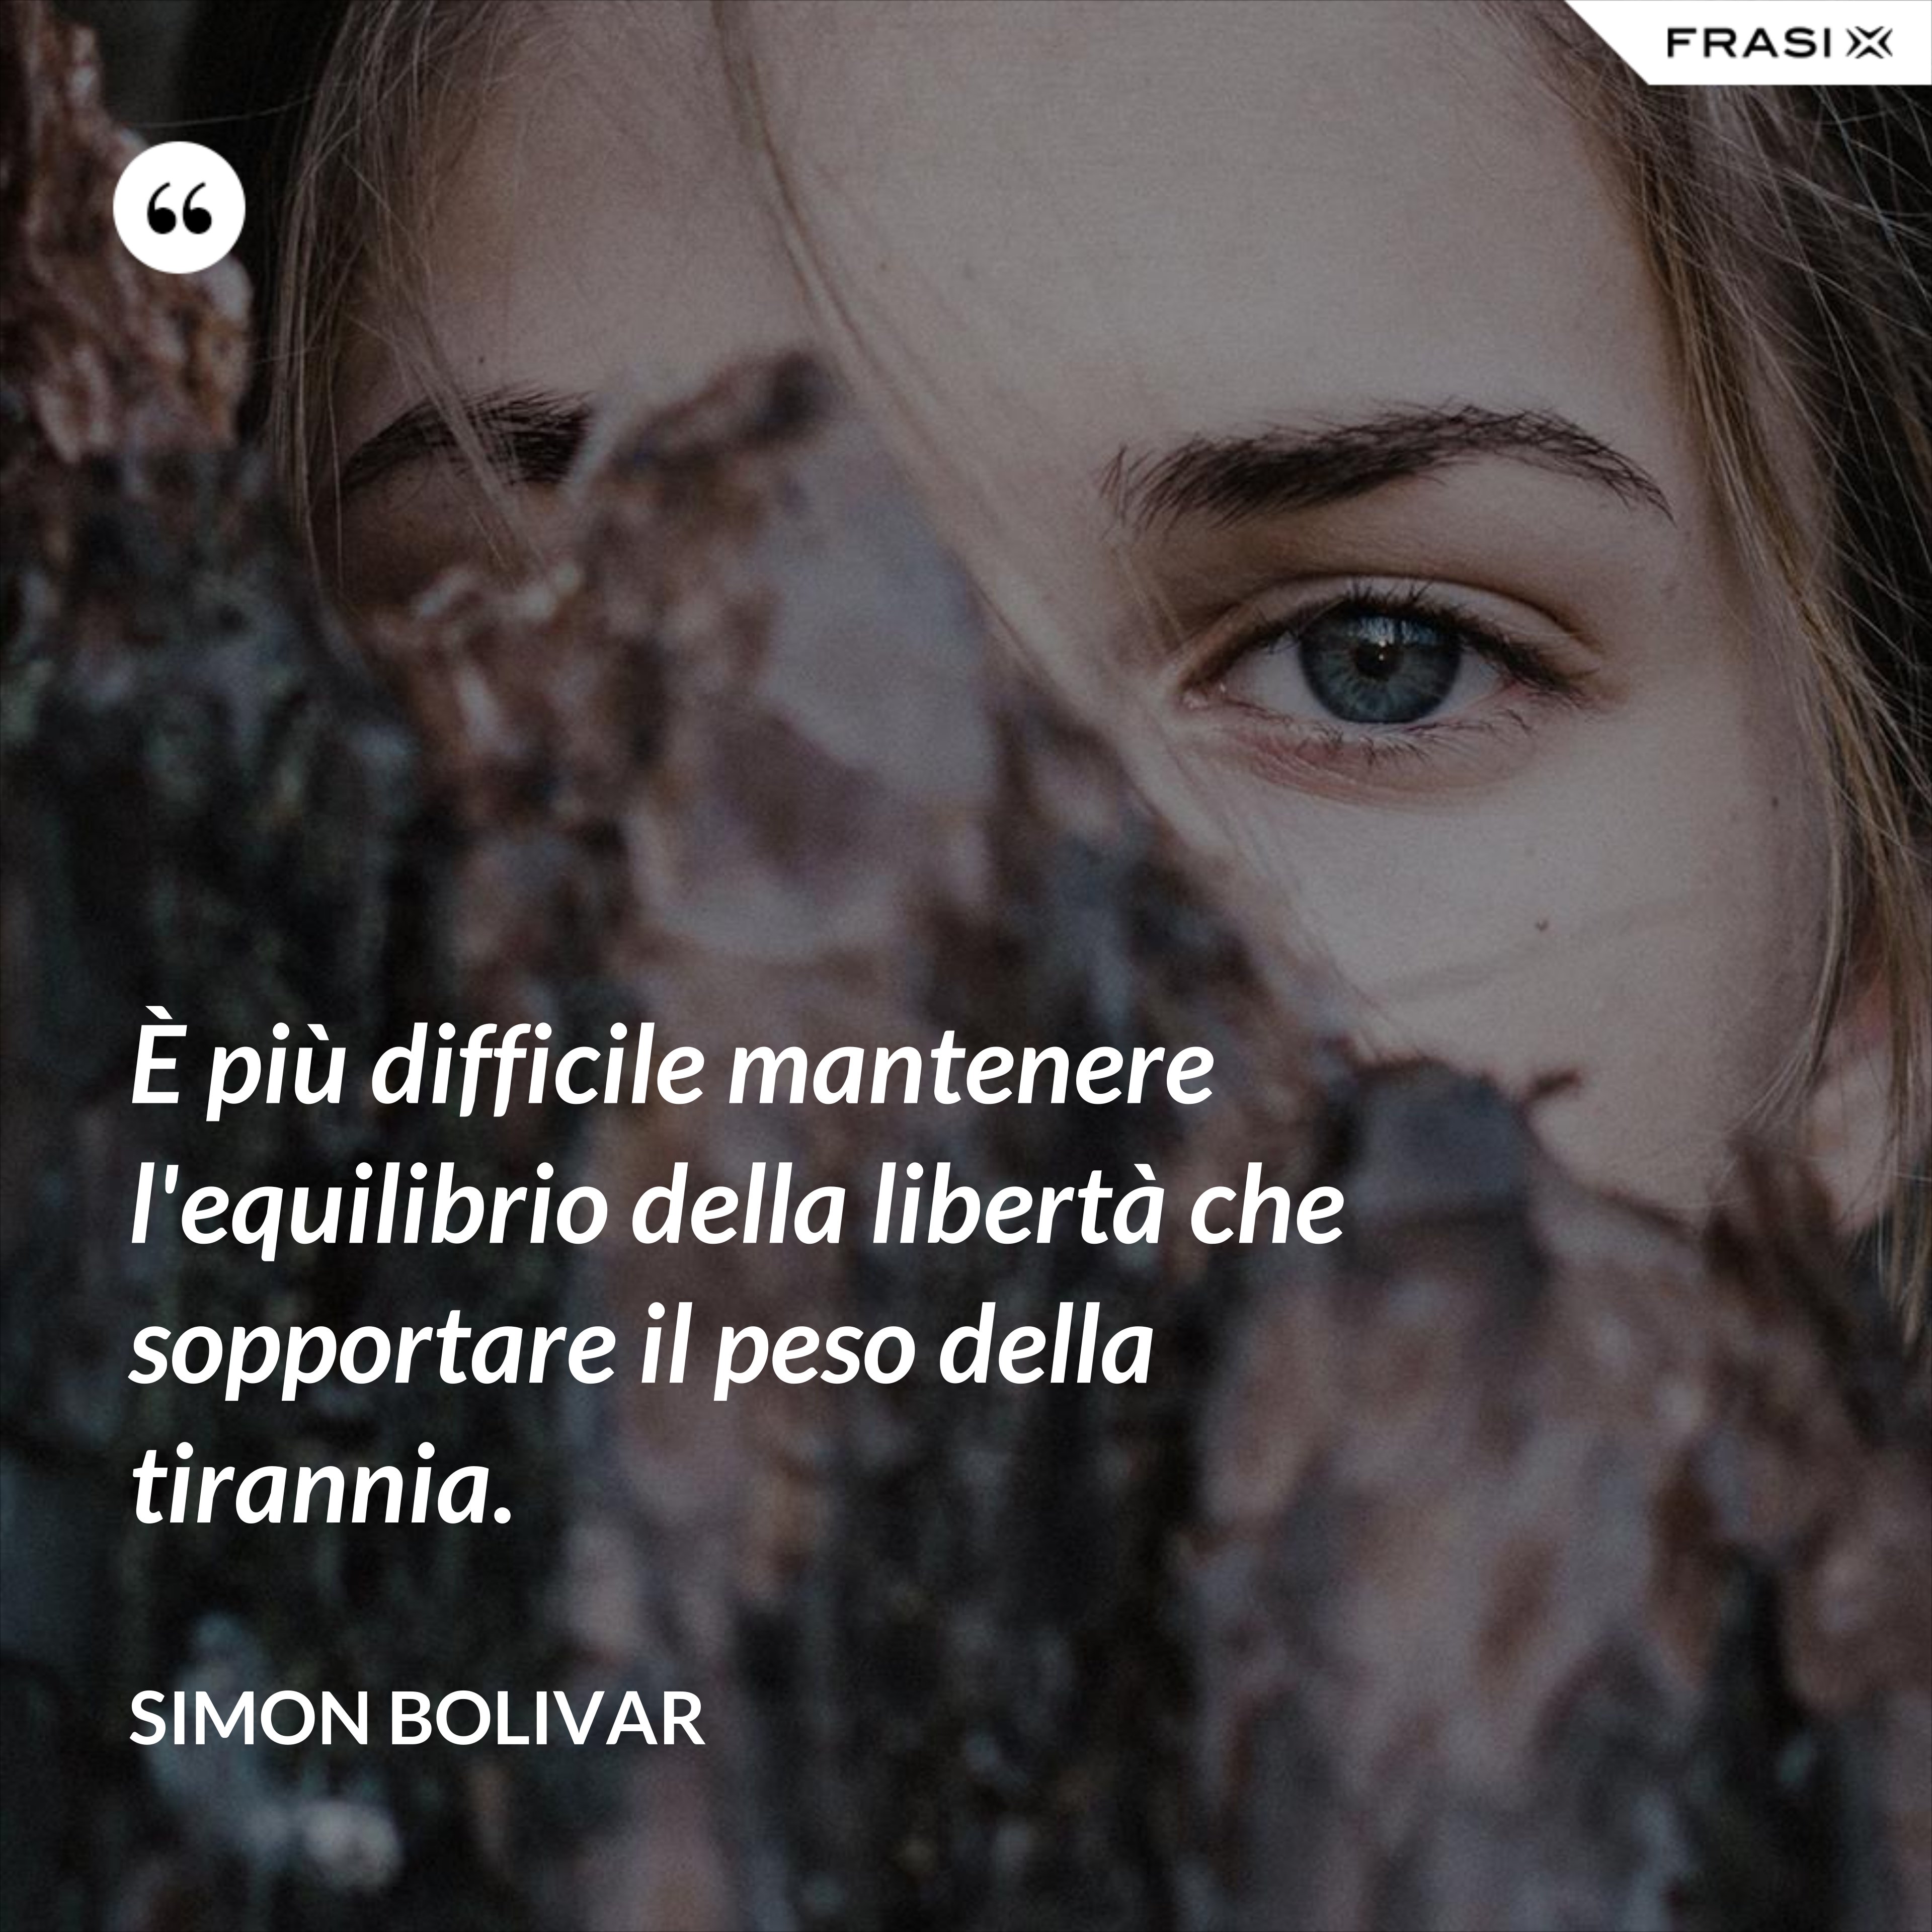 È più difficile mantenere l'equilibrio della libertà che sopportare il peso della tirannia. - Simon Bolivar